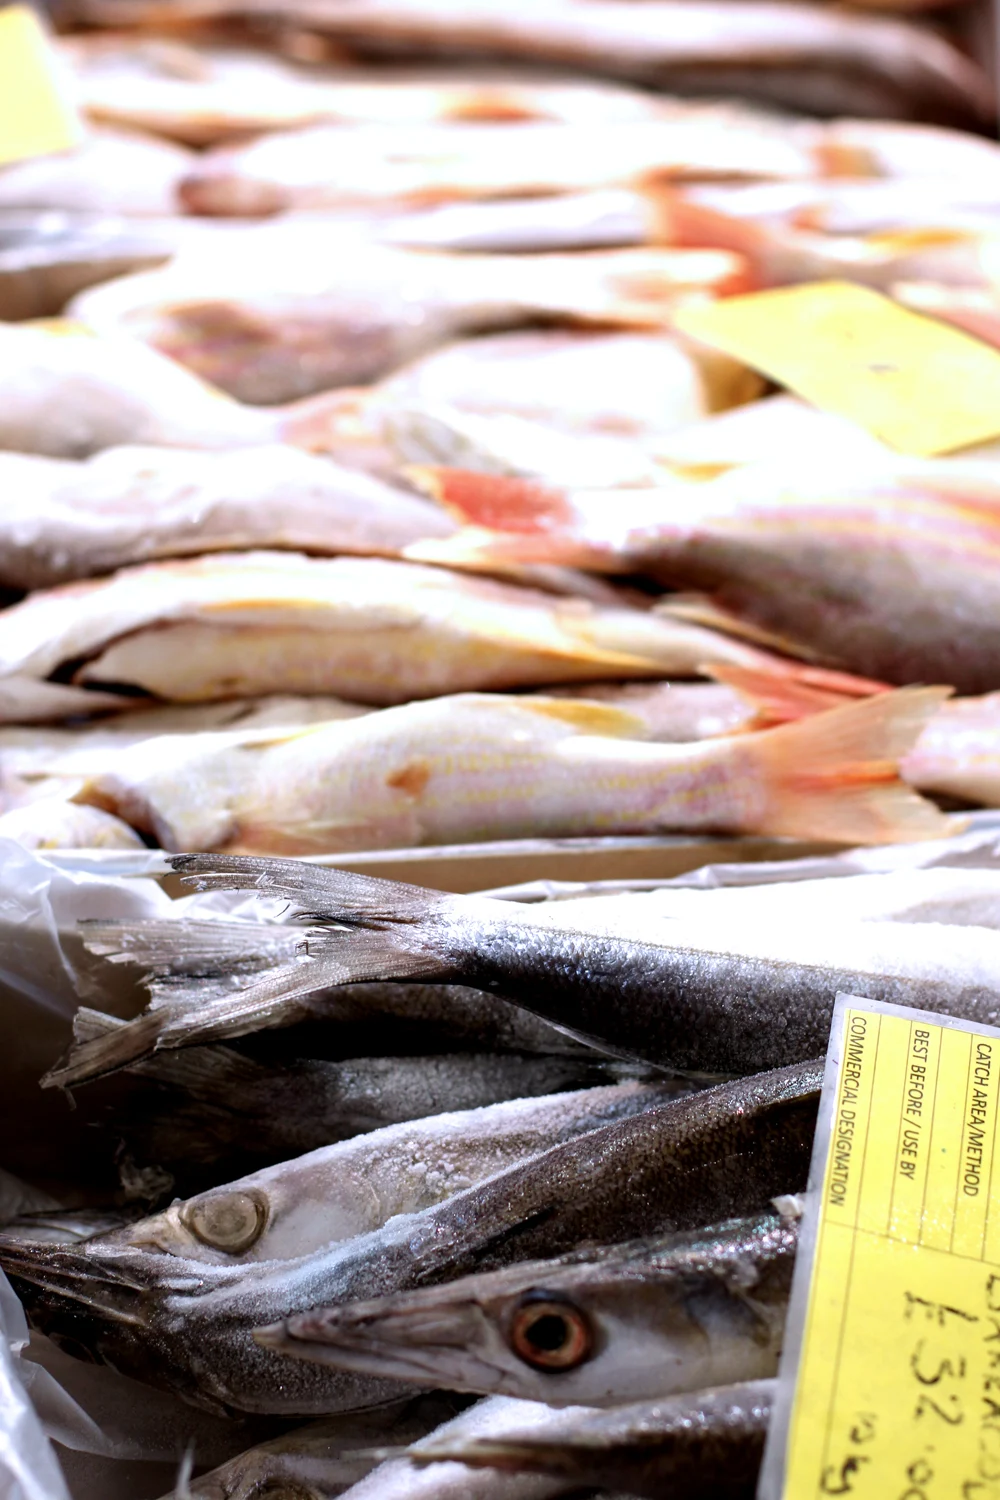 Fresh fish at Billingsgate Fish Market - London foodie blog